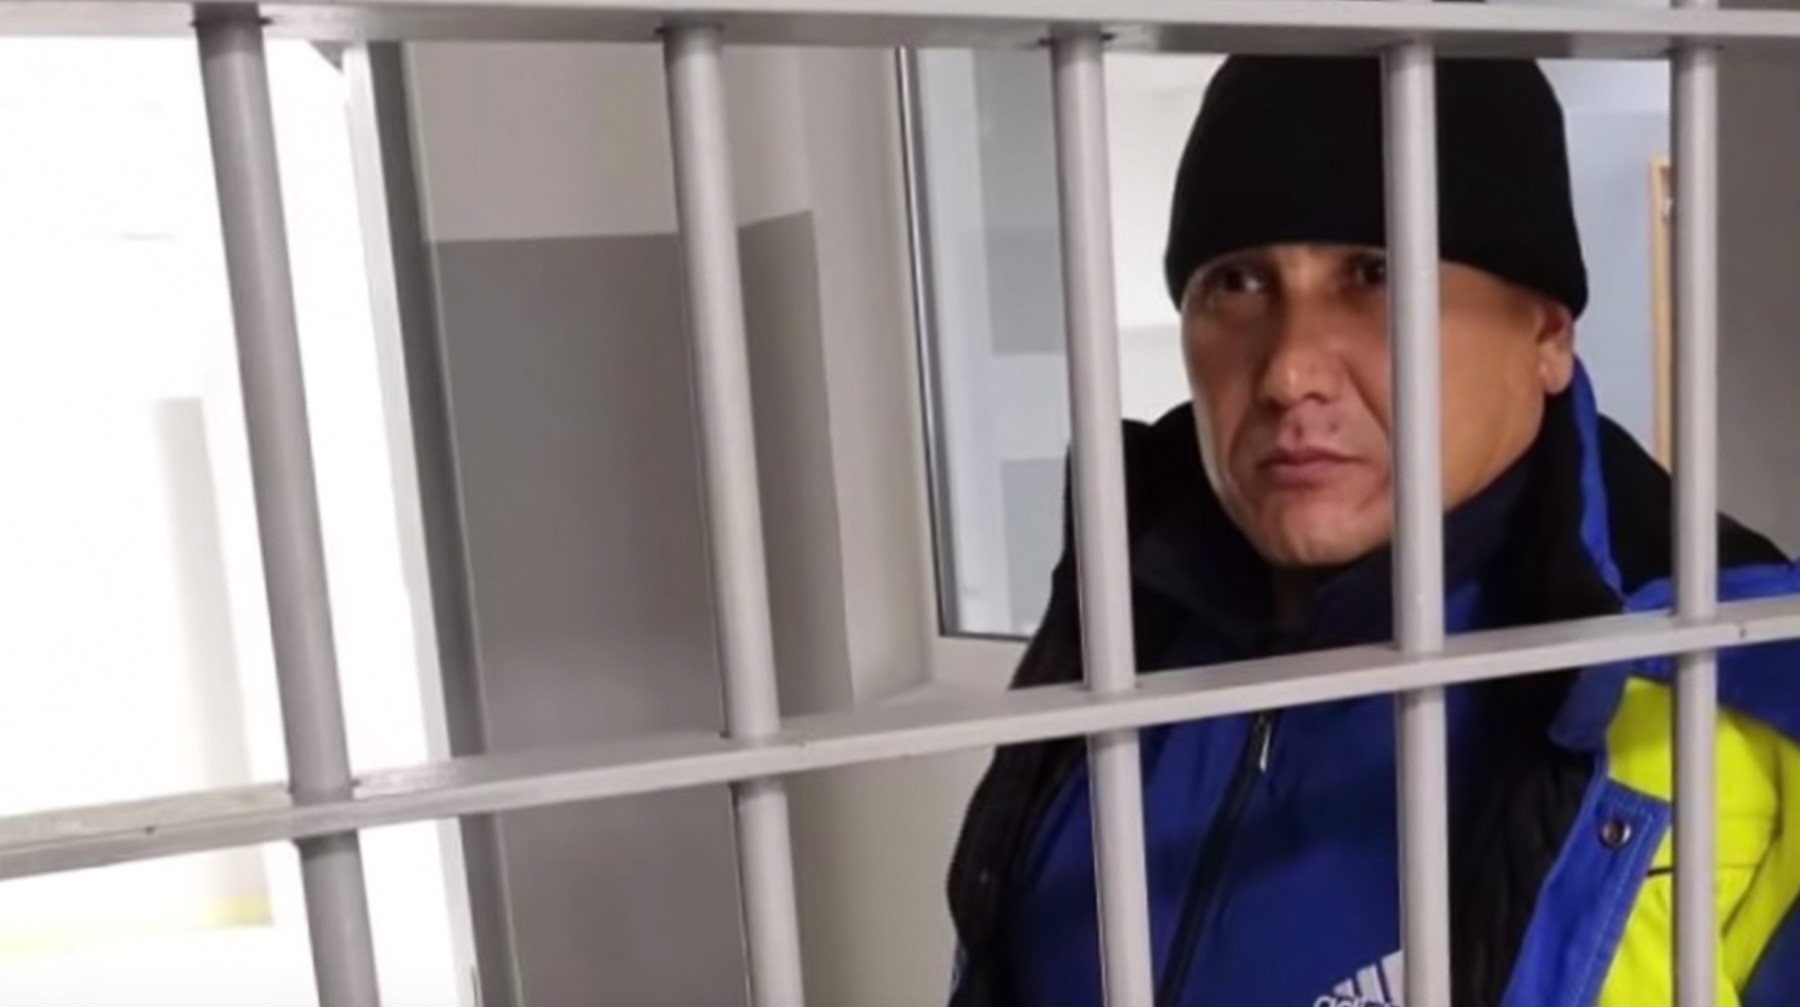 Dailystorm - Опубликовано видео с участником нападения на псковский десант из банды Басаева